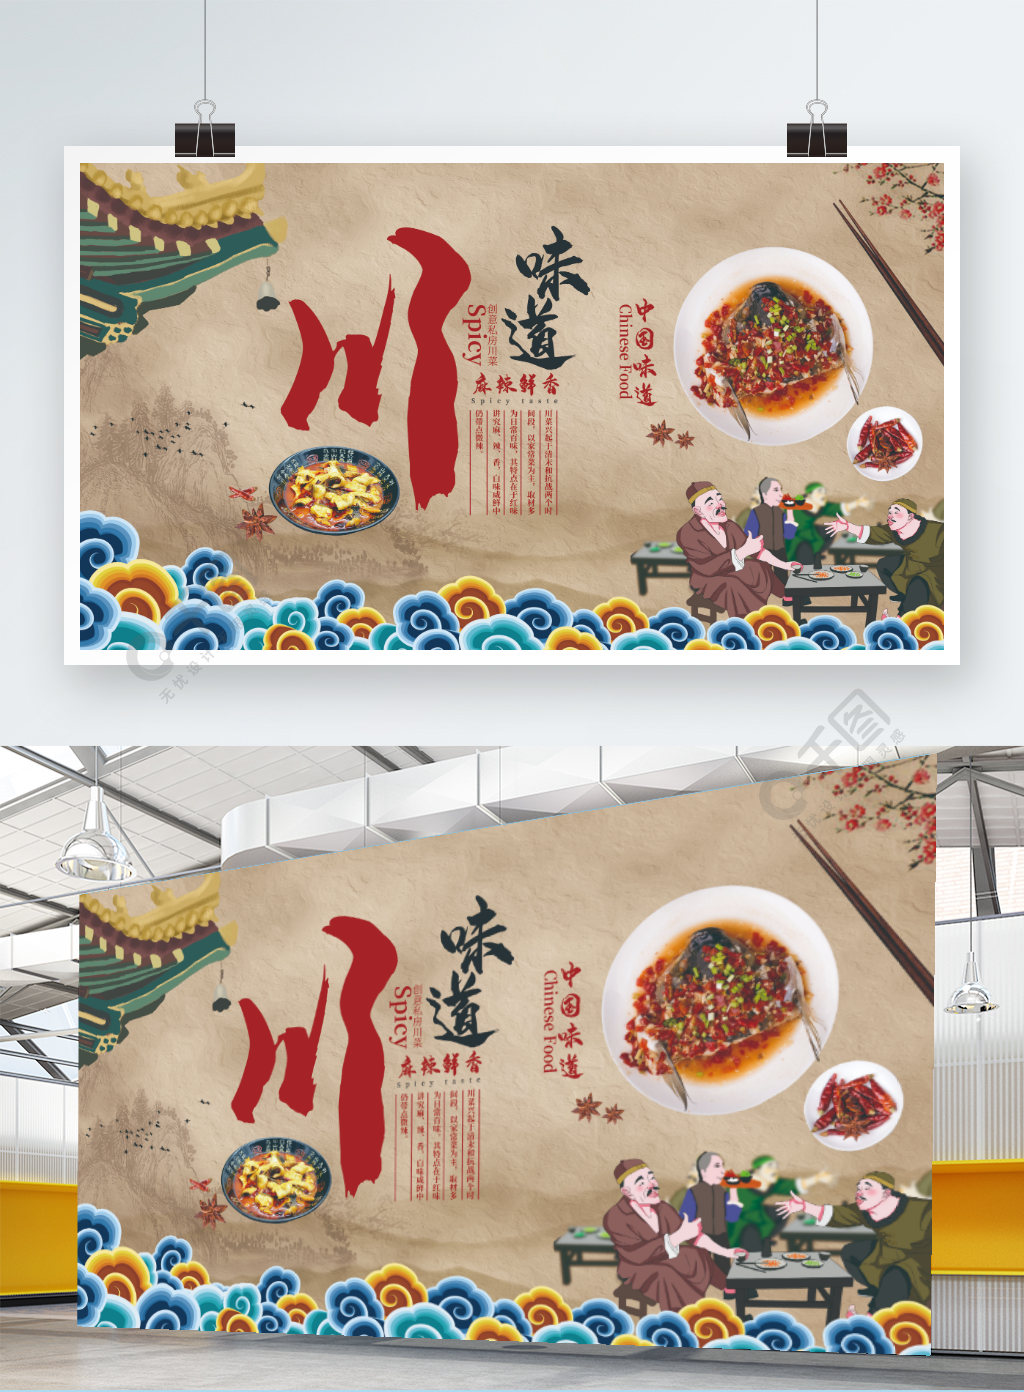 川菜川味道美味美食促销展板1年前发布